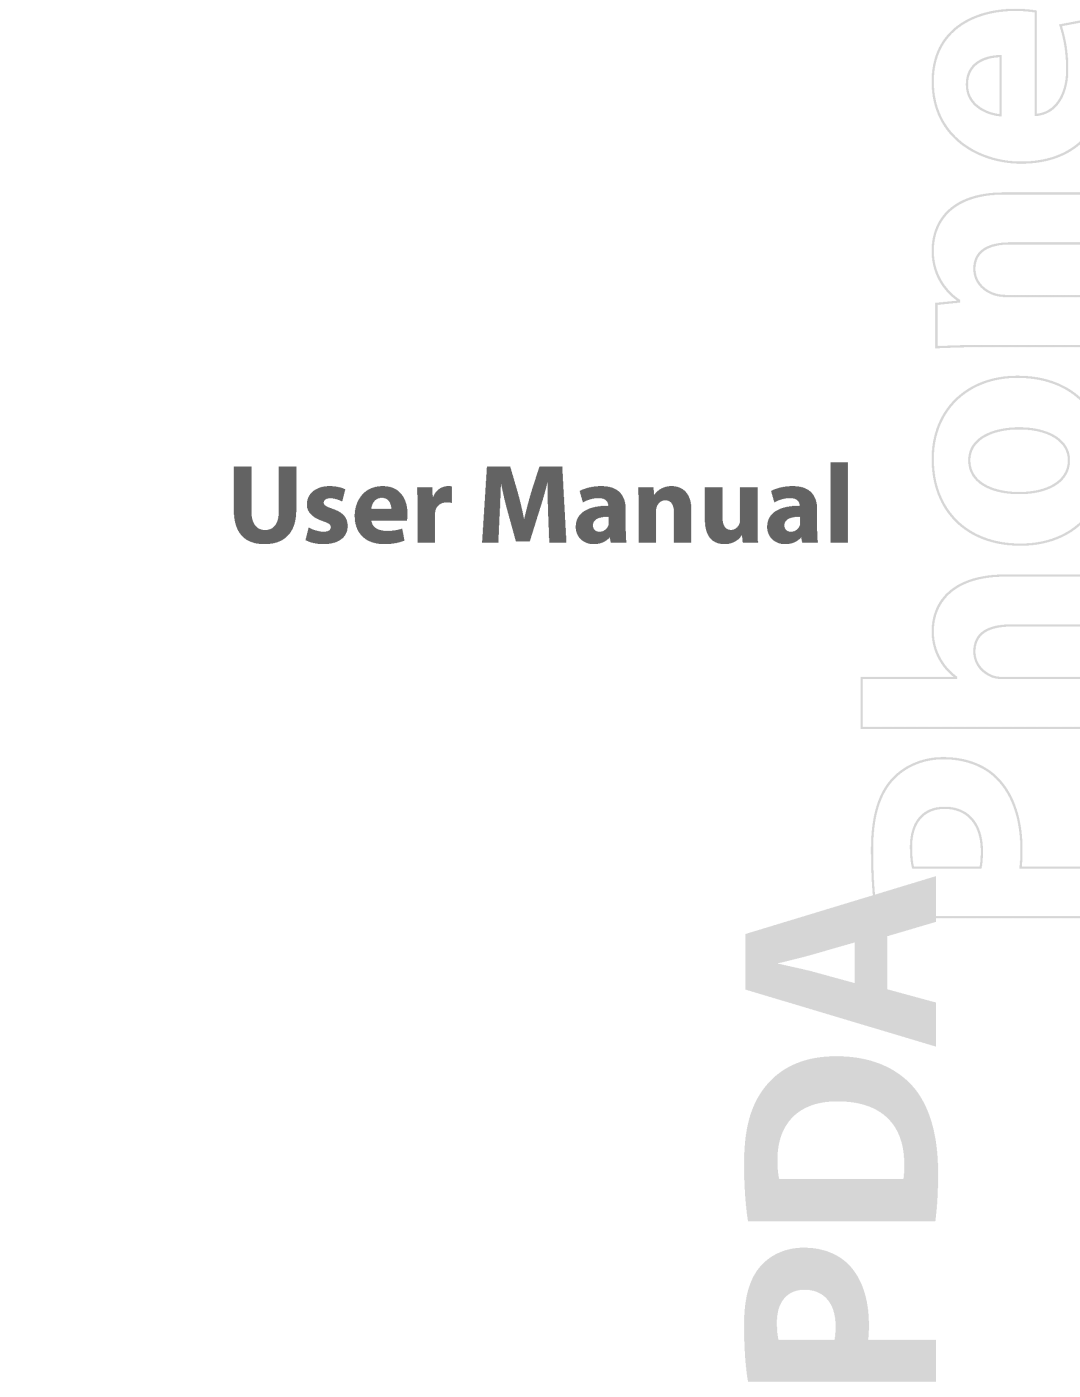 HTC PDA Phone user manual User Manual 